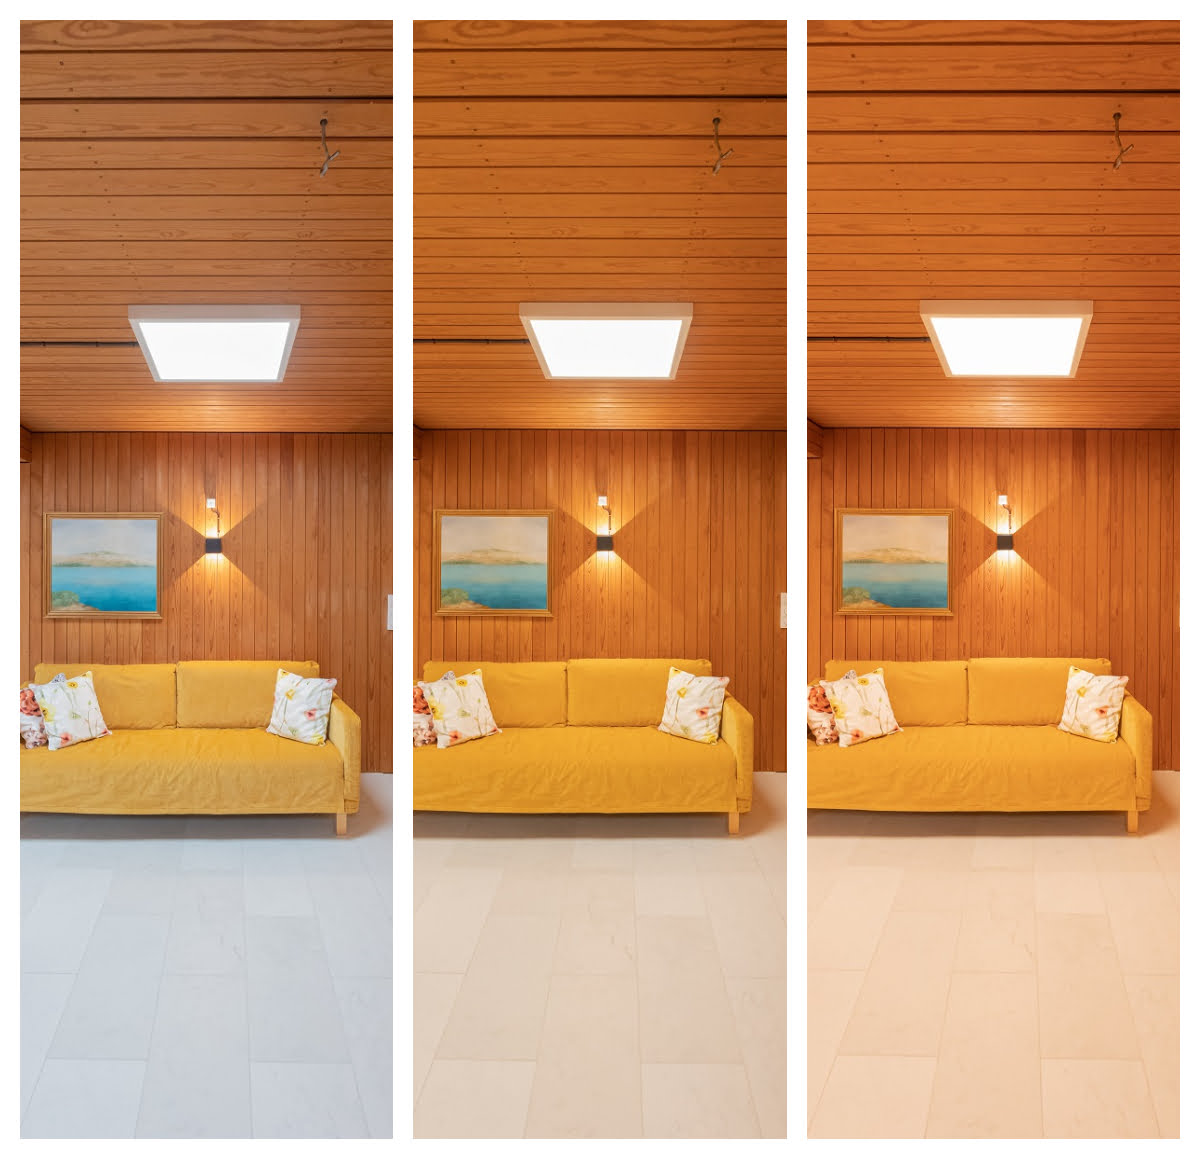 I ett rum med träpanel kommer träets nyanser, liksom nyansen på det renoverade golvet, att förändras dramatiskt beroende på vilken nyans av vitt ljus du justerar från panelerna. LedStore.fi